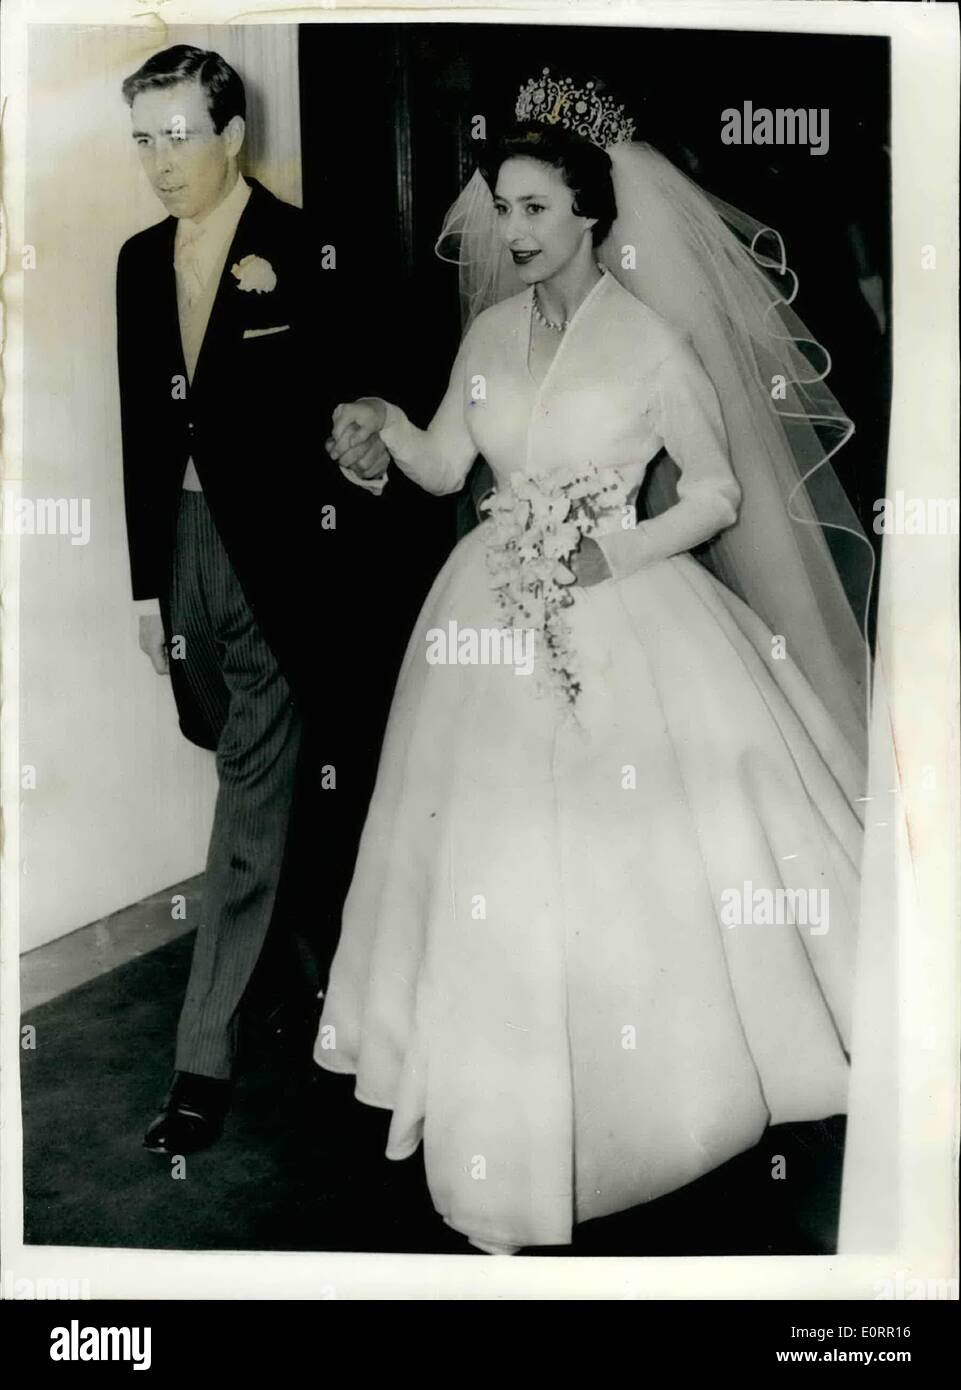 05 maggio 1960 - Il Royal Wedding giovane lasciare abbazia dopo il matrimonio. La foto mostra il Mr.Antony Armstrong Jones accompagnatrici sua sposa la principessa Margaret come hanno lasciato l'Abbazia dopo le loro nozze questo pomeriggio. Foto Stock